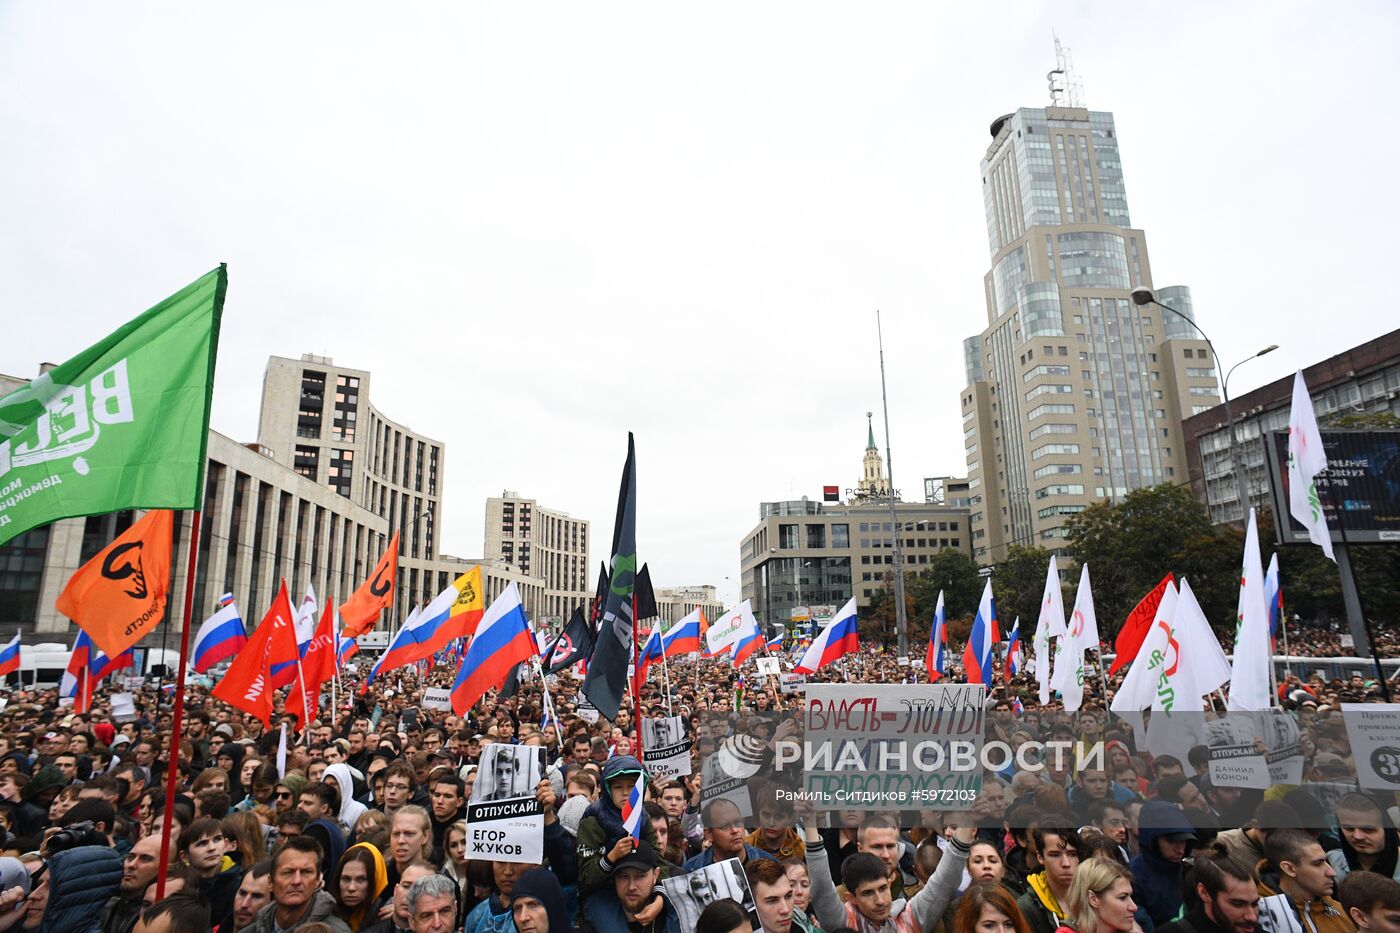 Акция в поддержку незарегистрированных кандидатов в Мосгордуму